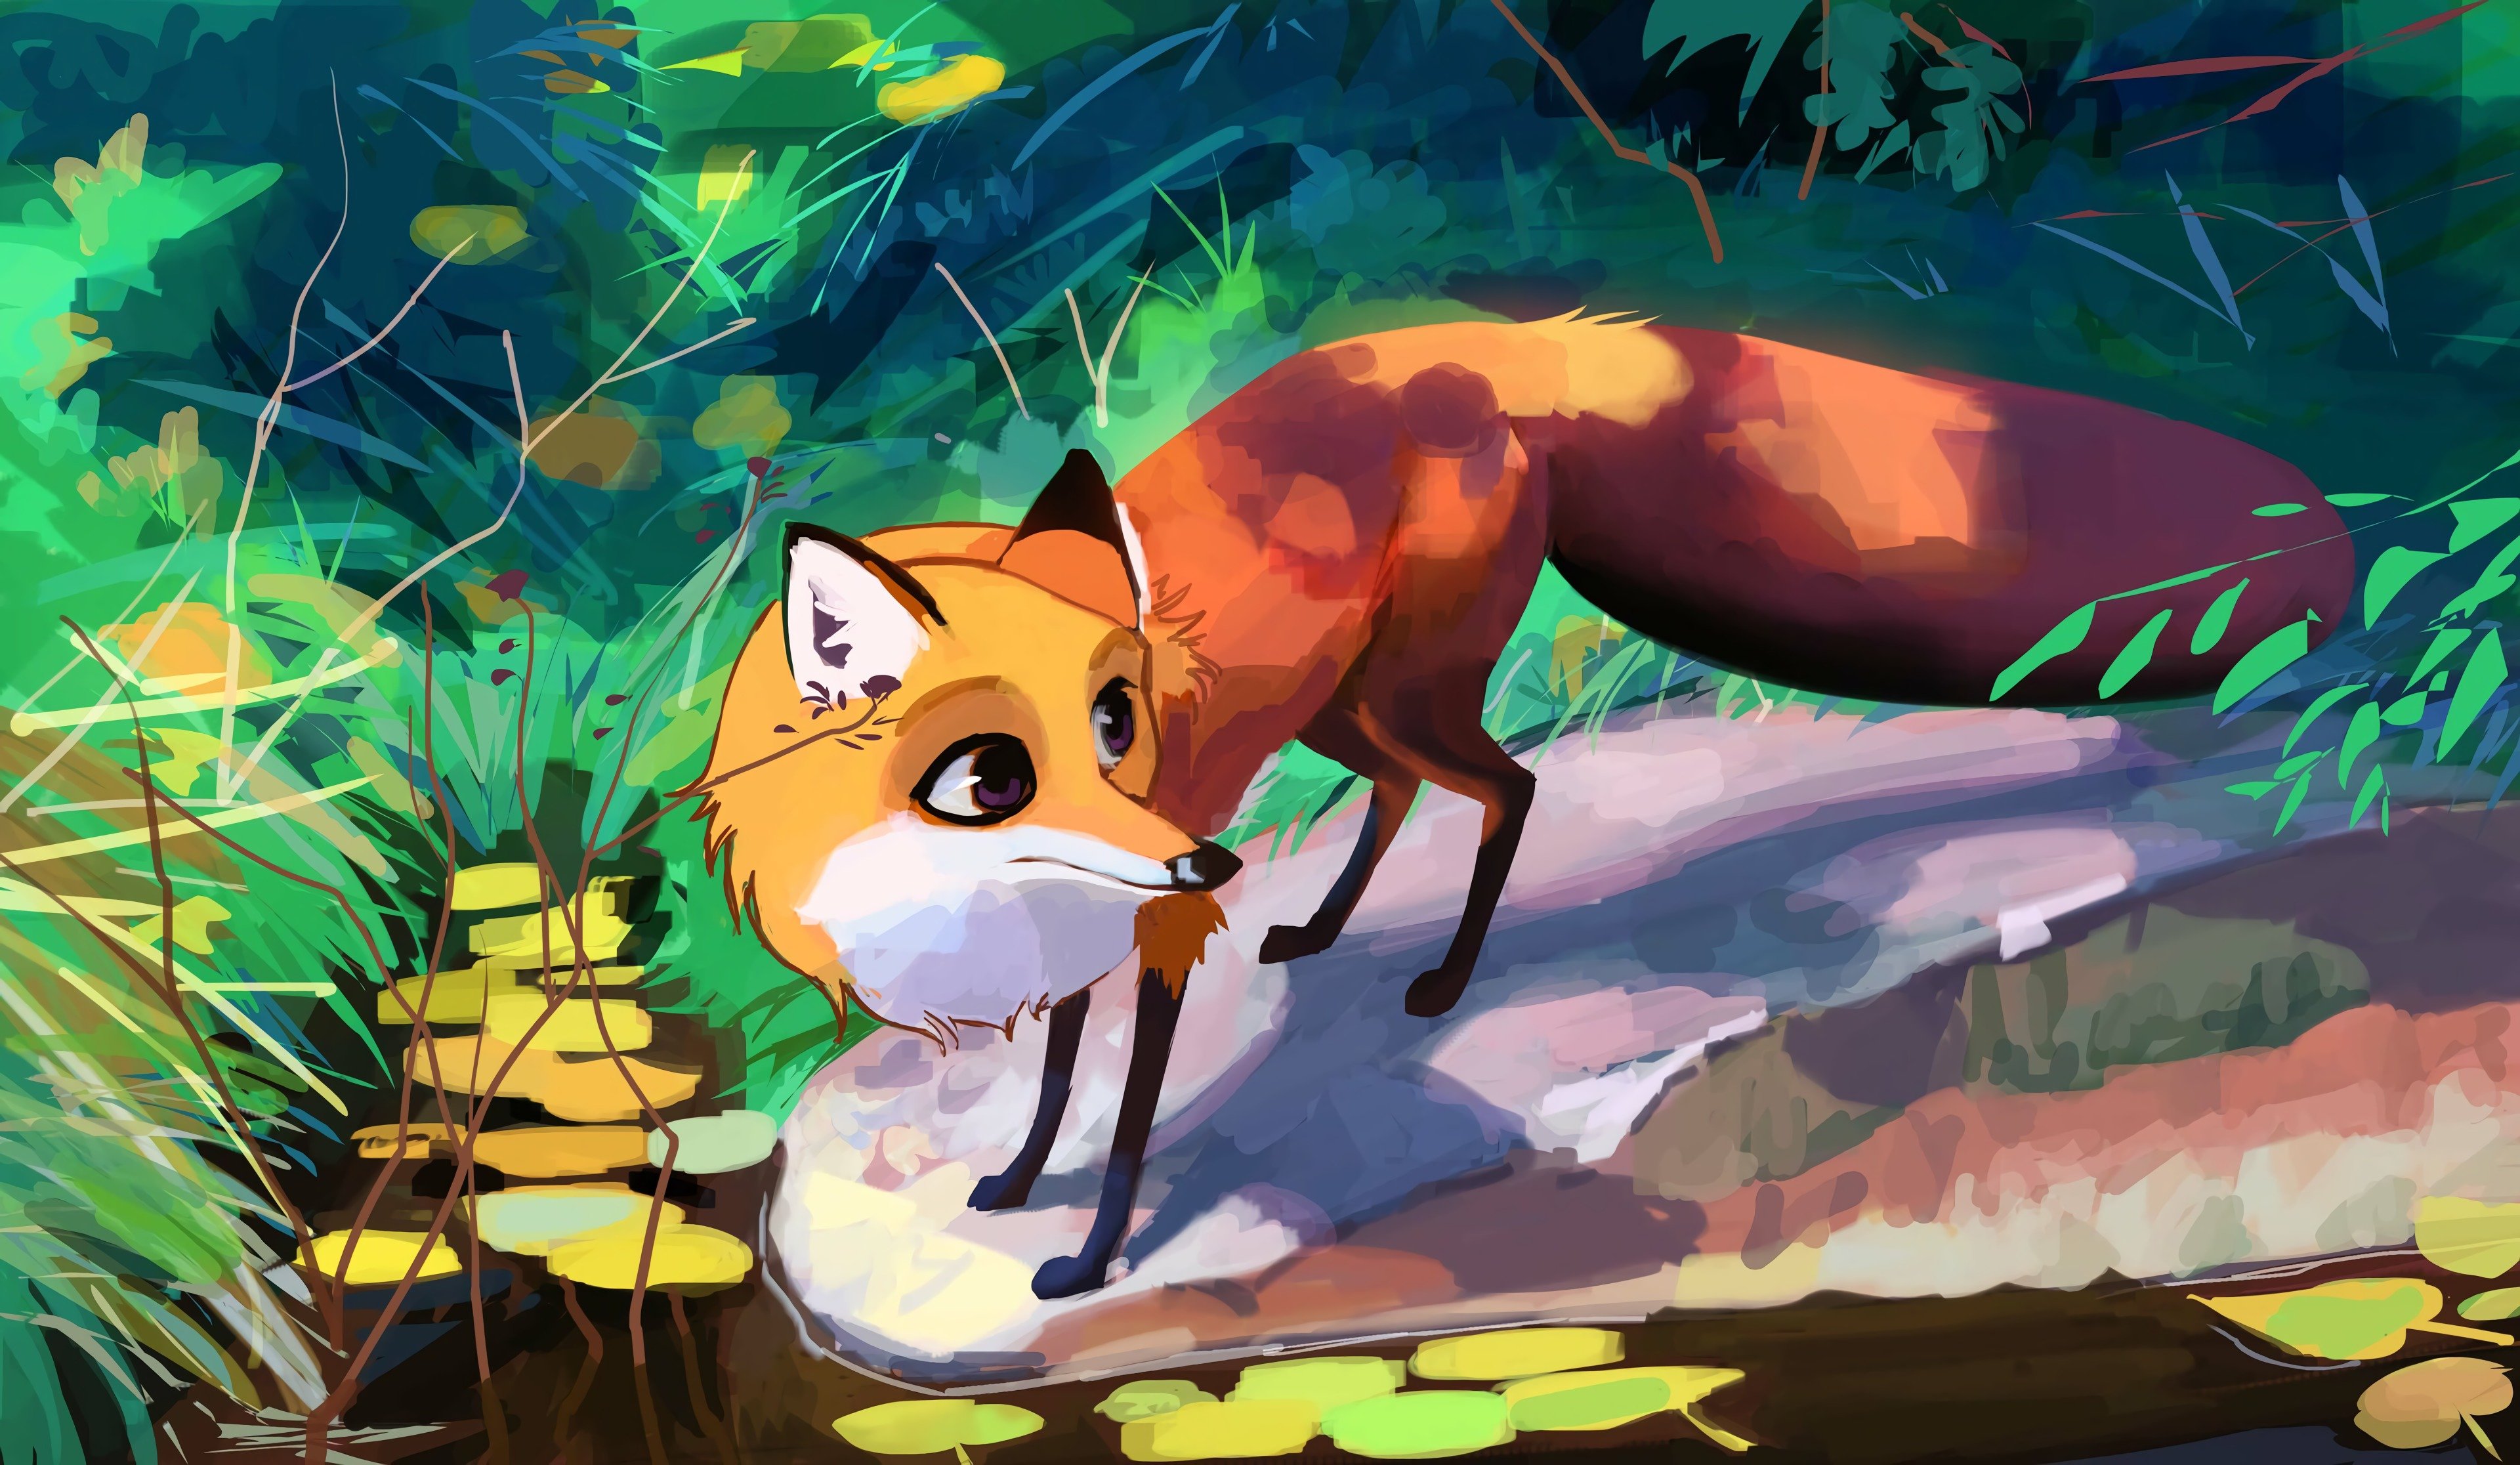 Take fox